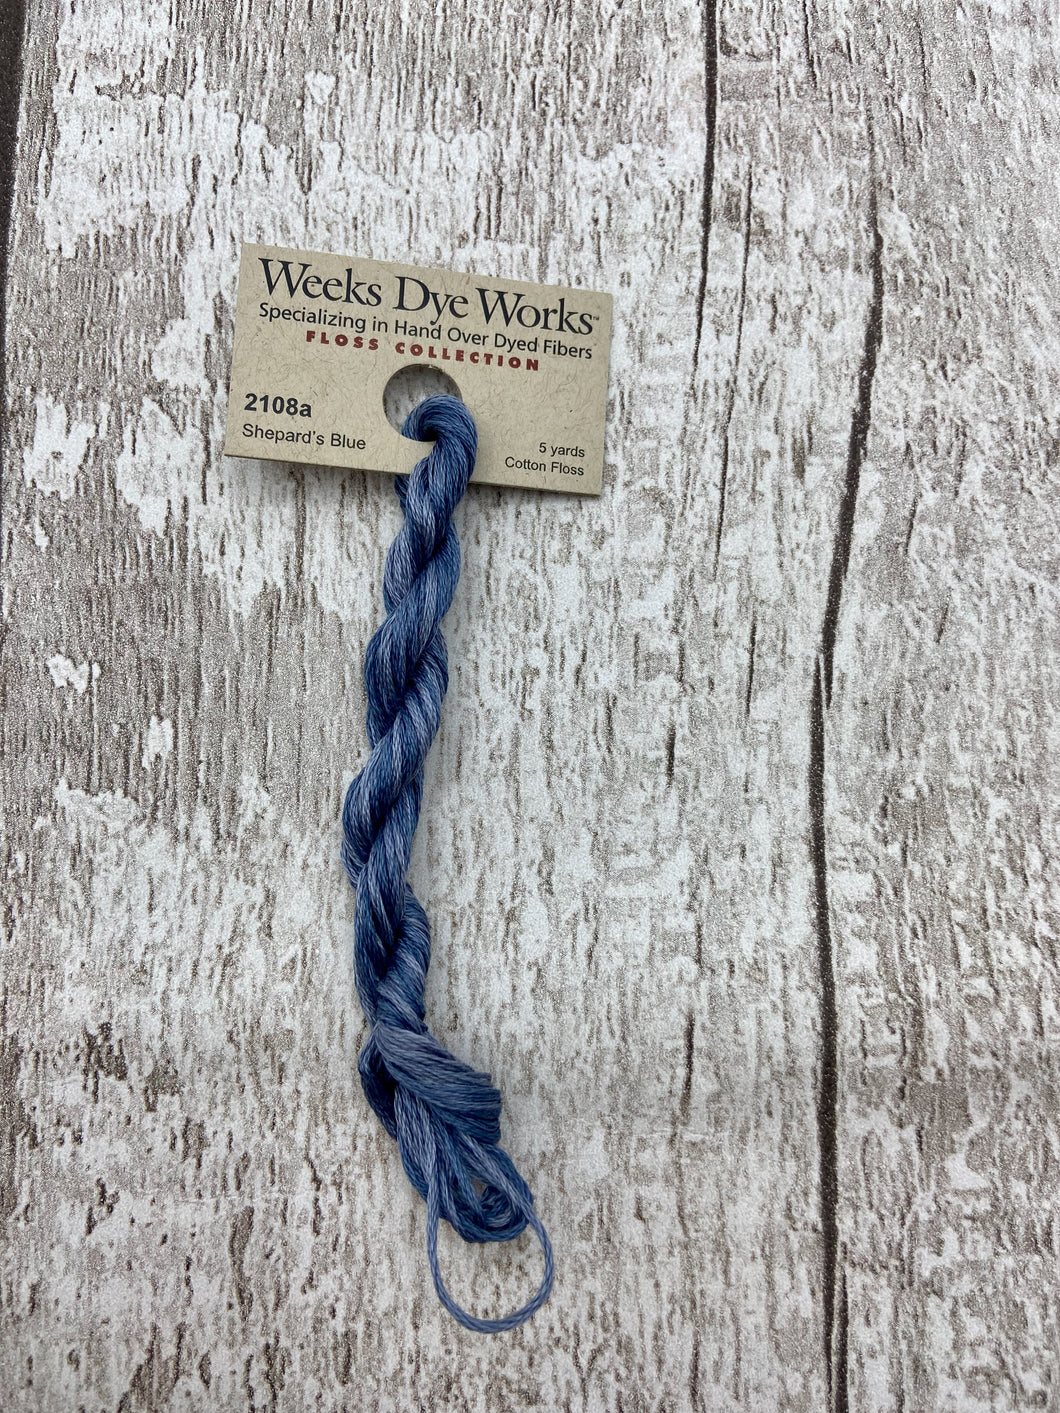 Shepard's Blue (#2108a) 6-strand cotton floss